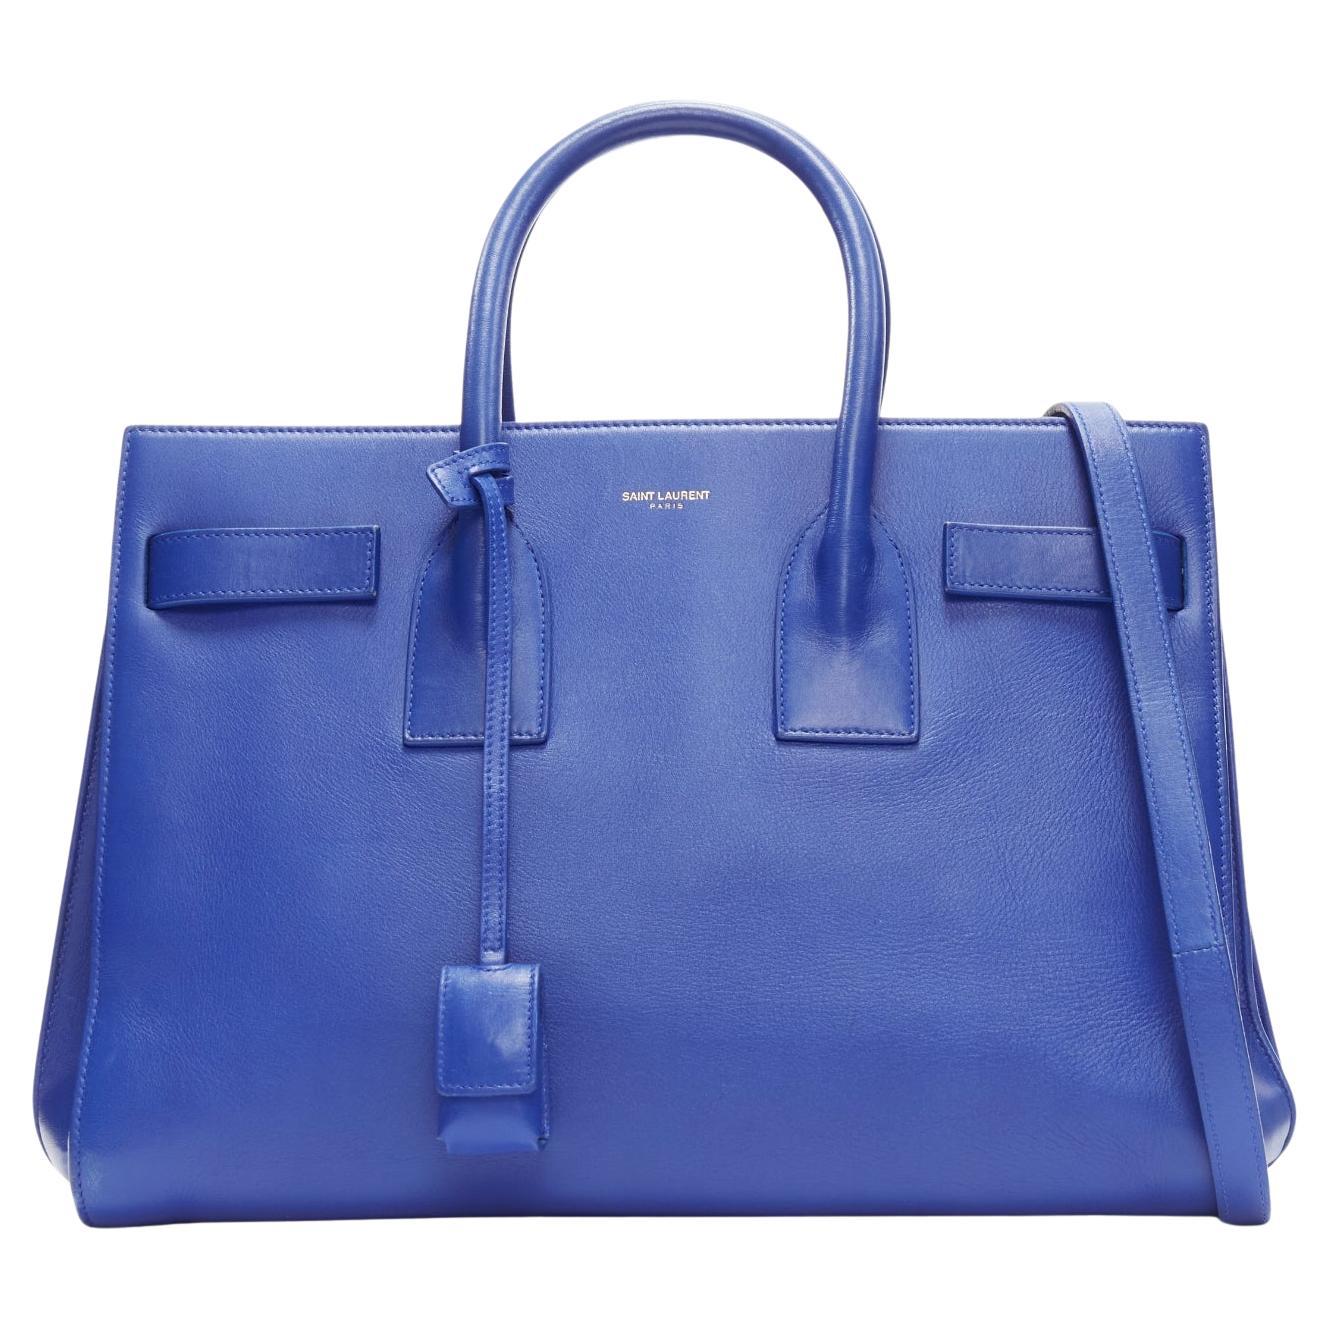 SAINT LAURENT Sac Du Jour Royal Blue executive satchel tote bag